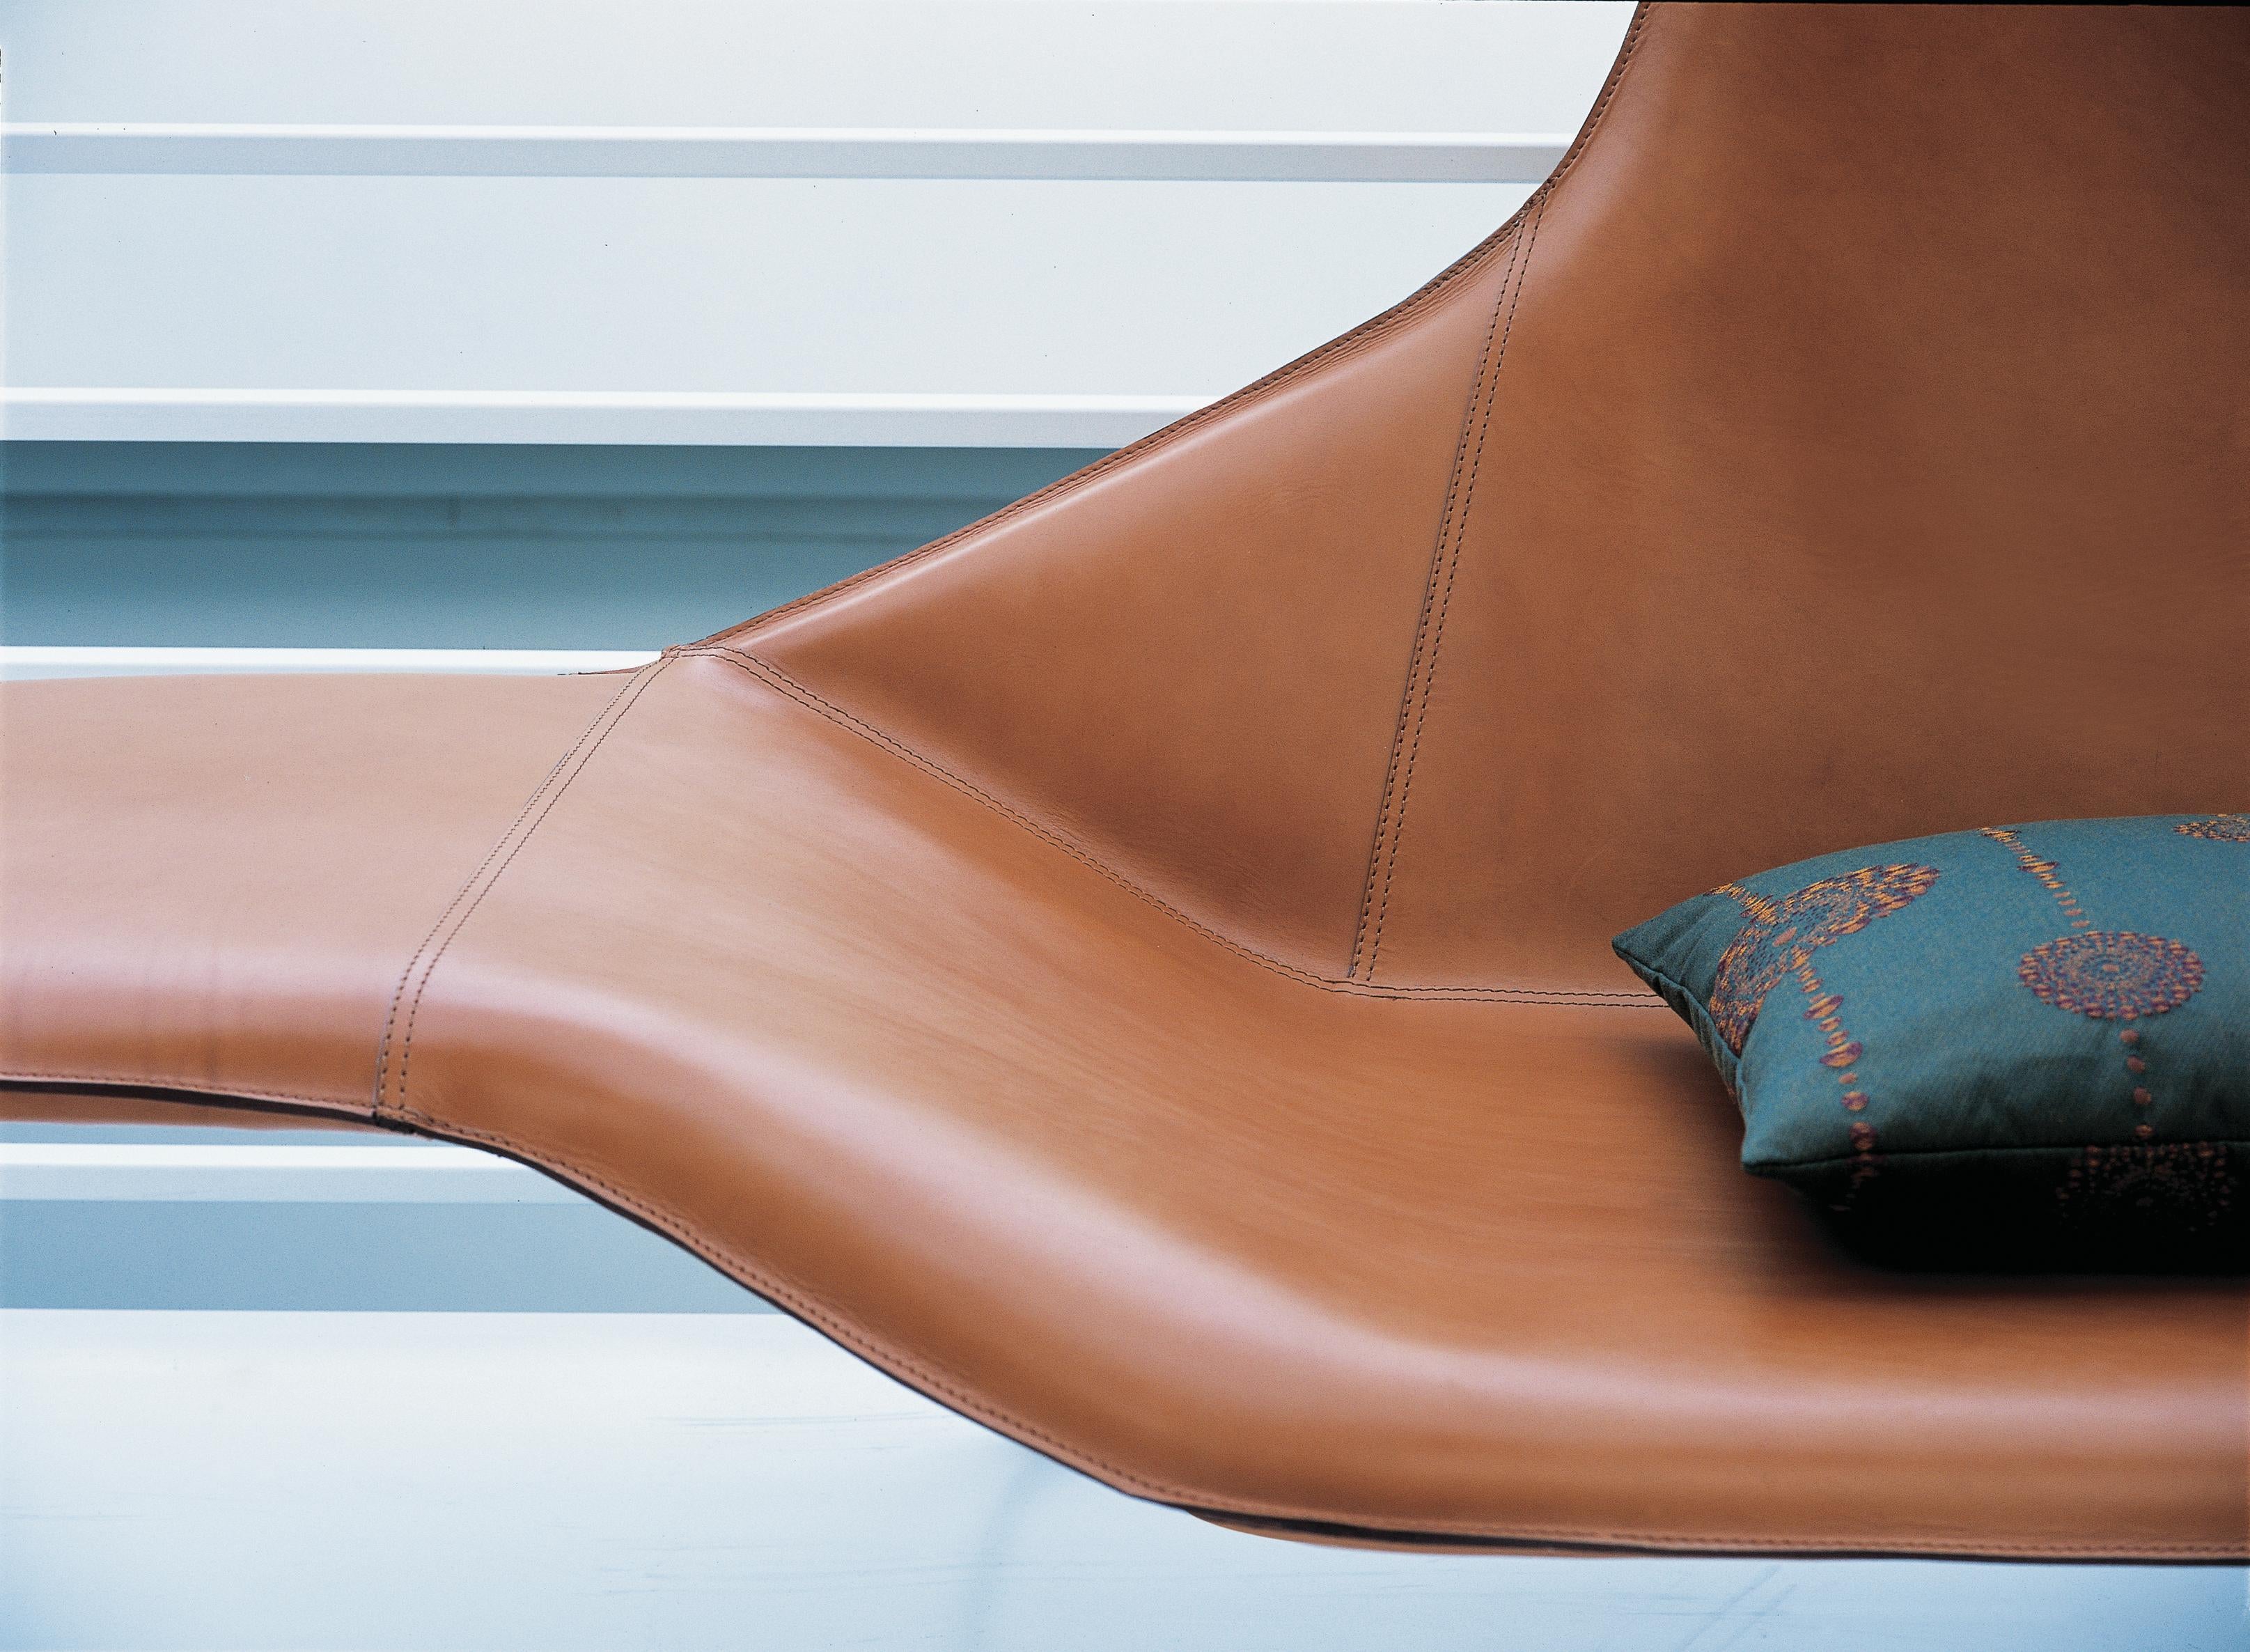 Chaise longue Zanotta Lama en cuir brun avec cadre en acier graphite par Ludovica+Roberto Palomba

Structure en acier verni, couleur graphite. Rembourrage en mousse polyuréthane auto-extinguible avec suspension par bandes élastiques. Housse